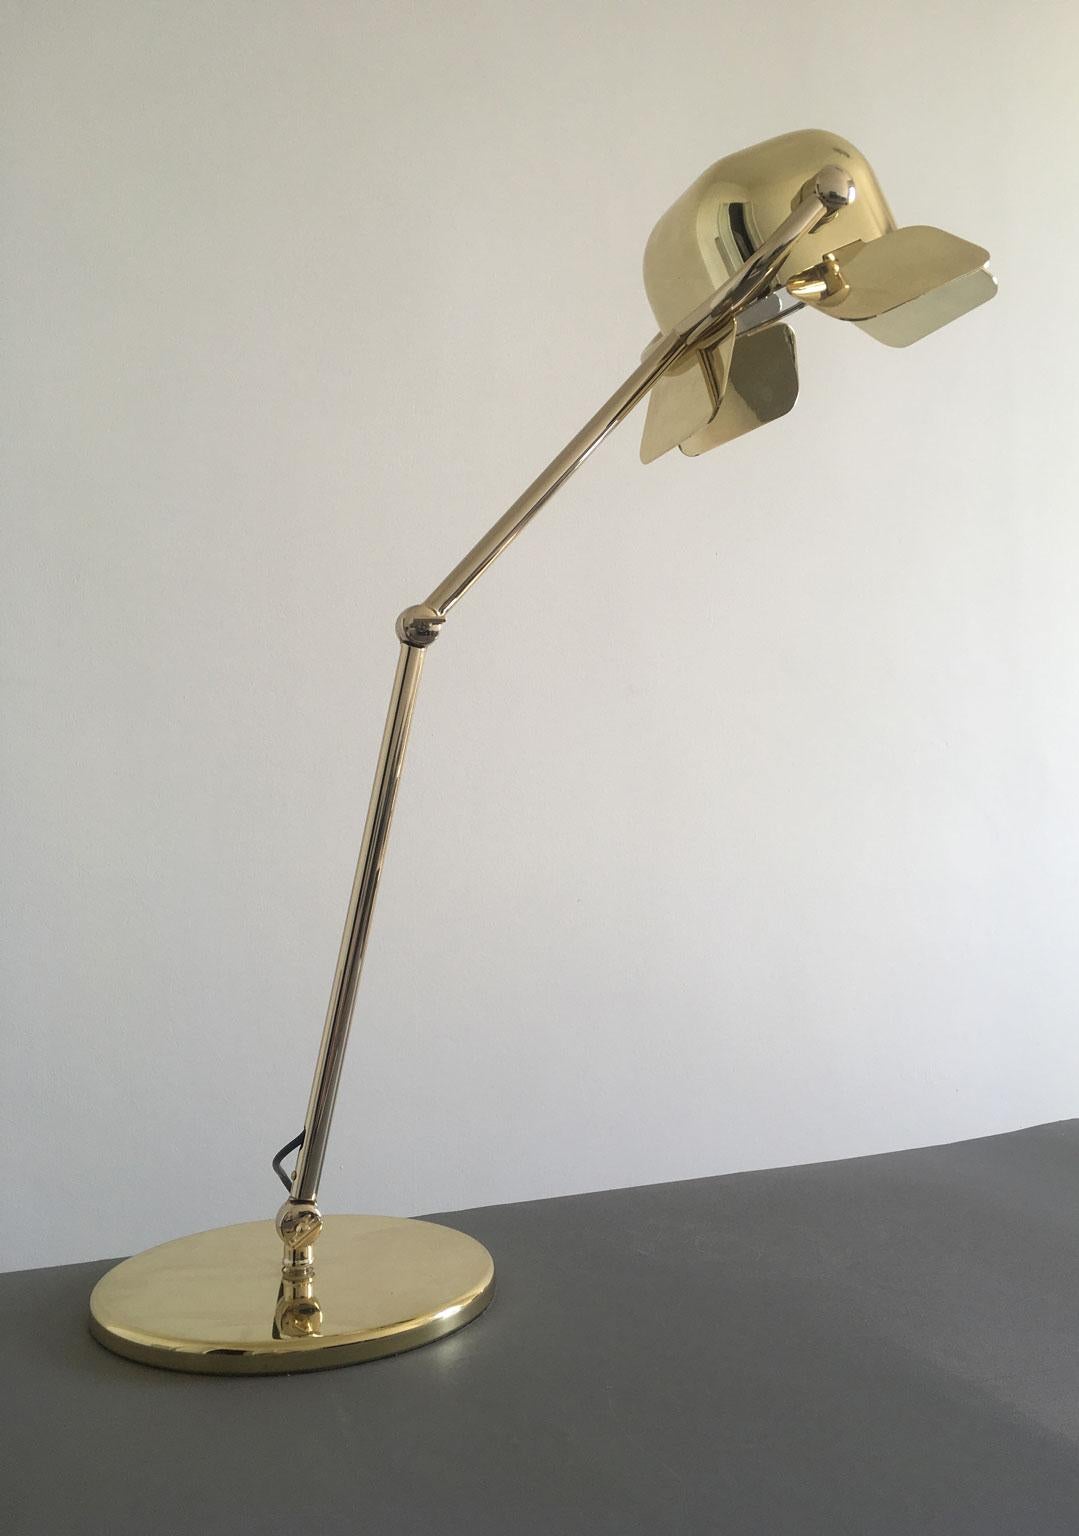 Lampe de table en laiton et aluminium fabriquée par Ghidini 1961 et conçue par Nica Zupanc. Cette lampe au design moderne où la lumière est projetée à travers quatre volets réglables et la structure fine en acier donne une touche d'élégance